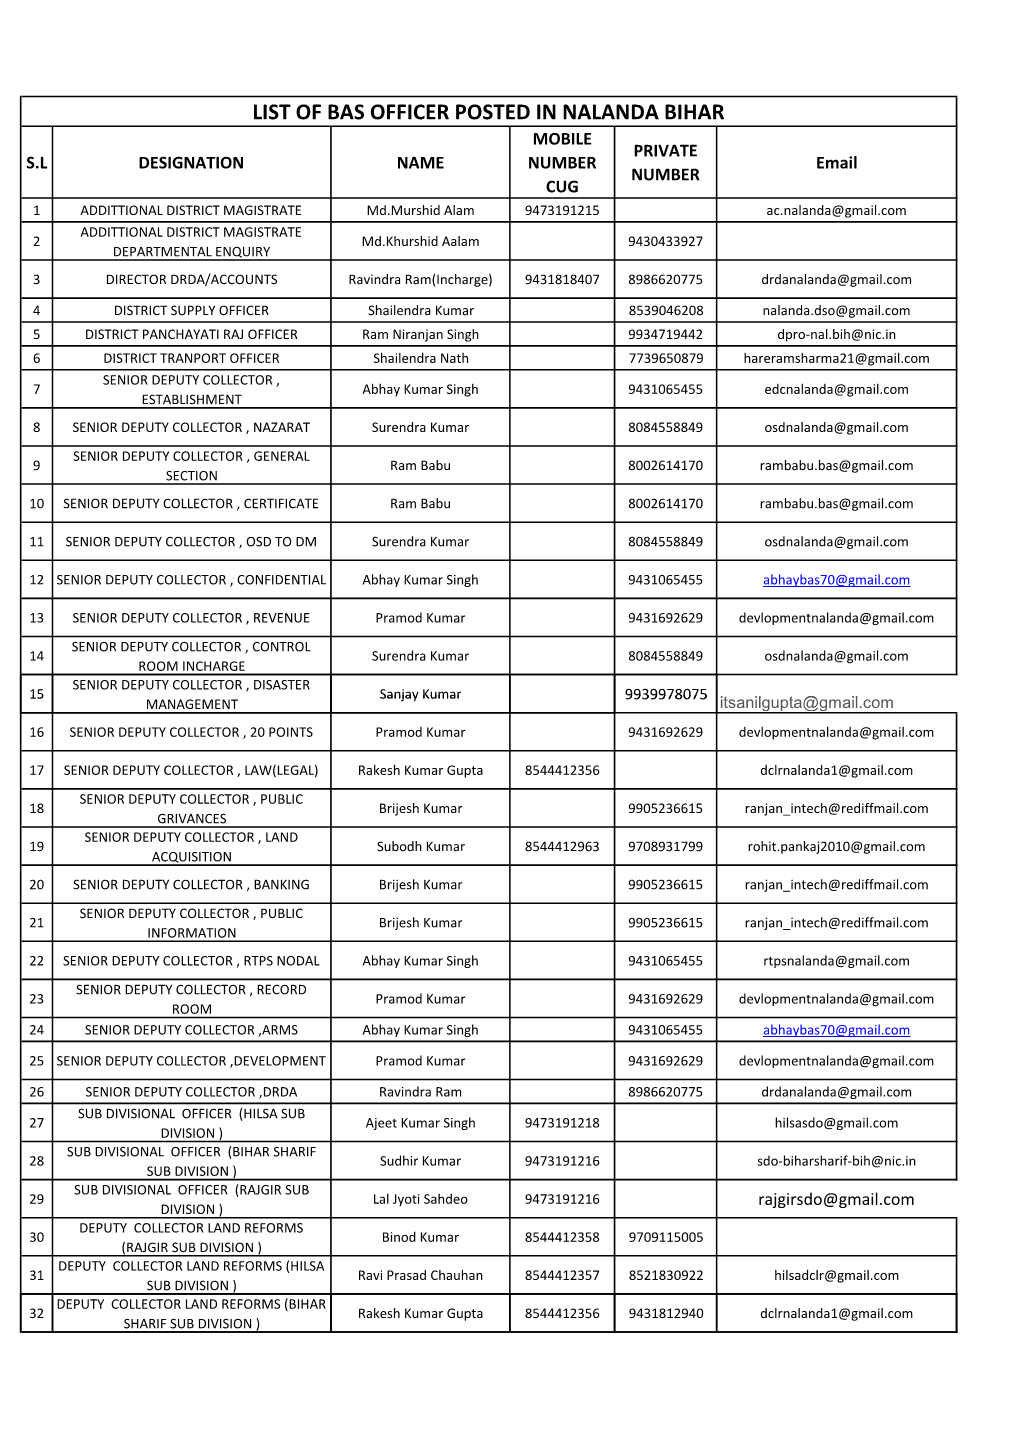 List of Bas Officer Posted in Nalanda Bihar